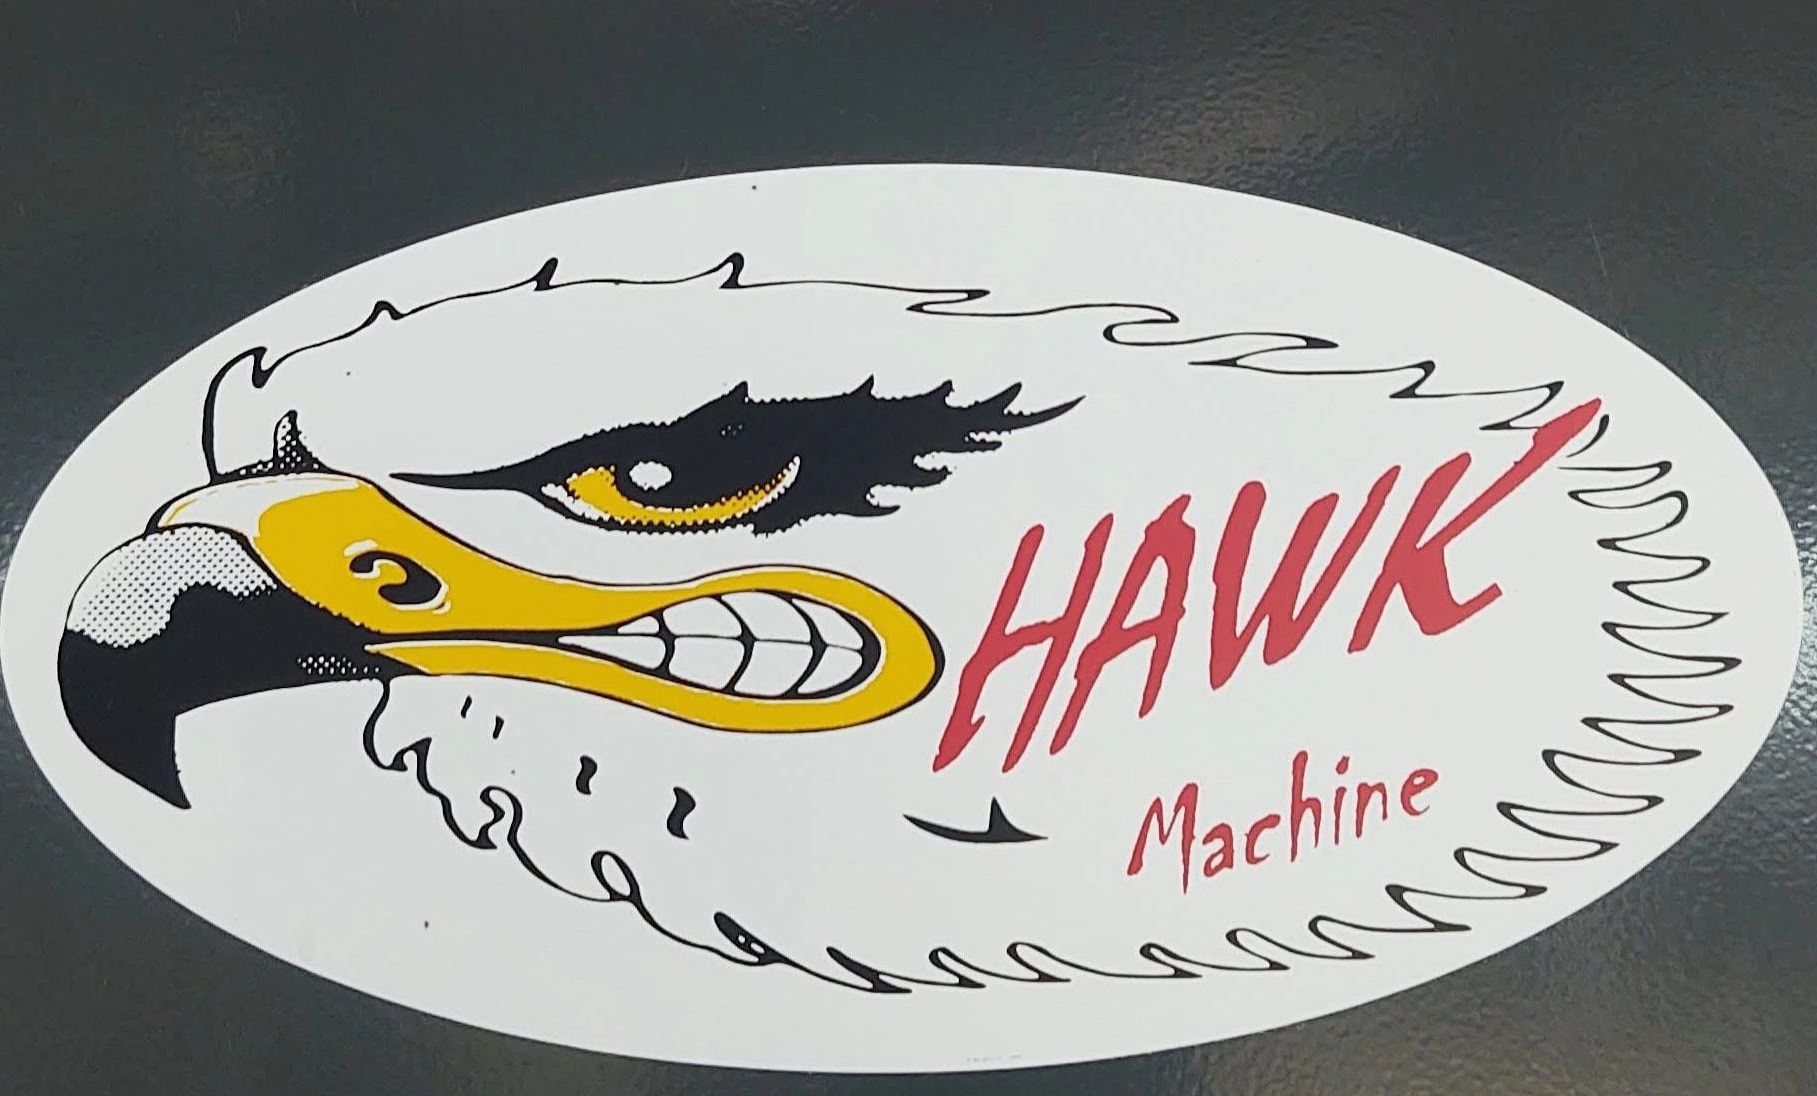 Hawk Machine Company